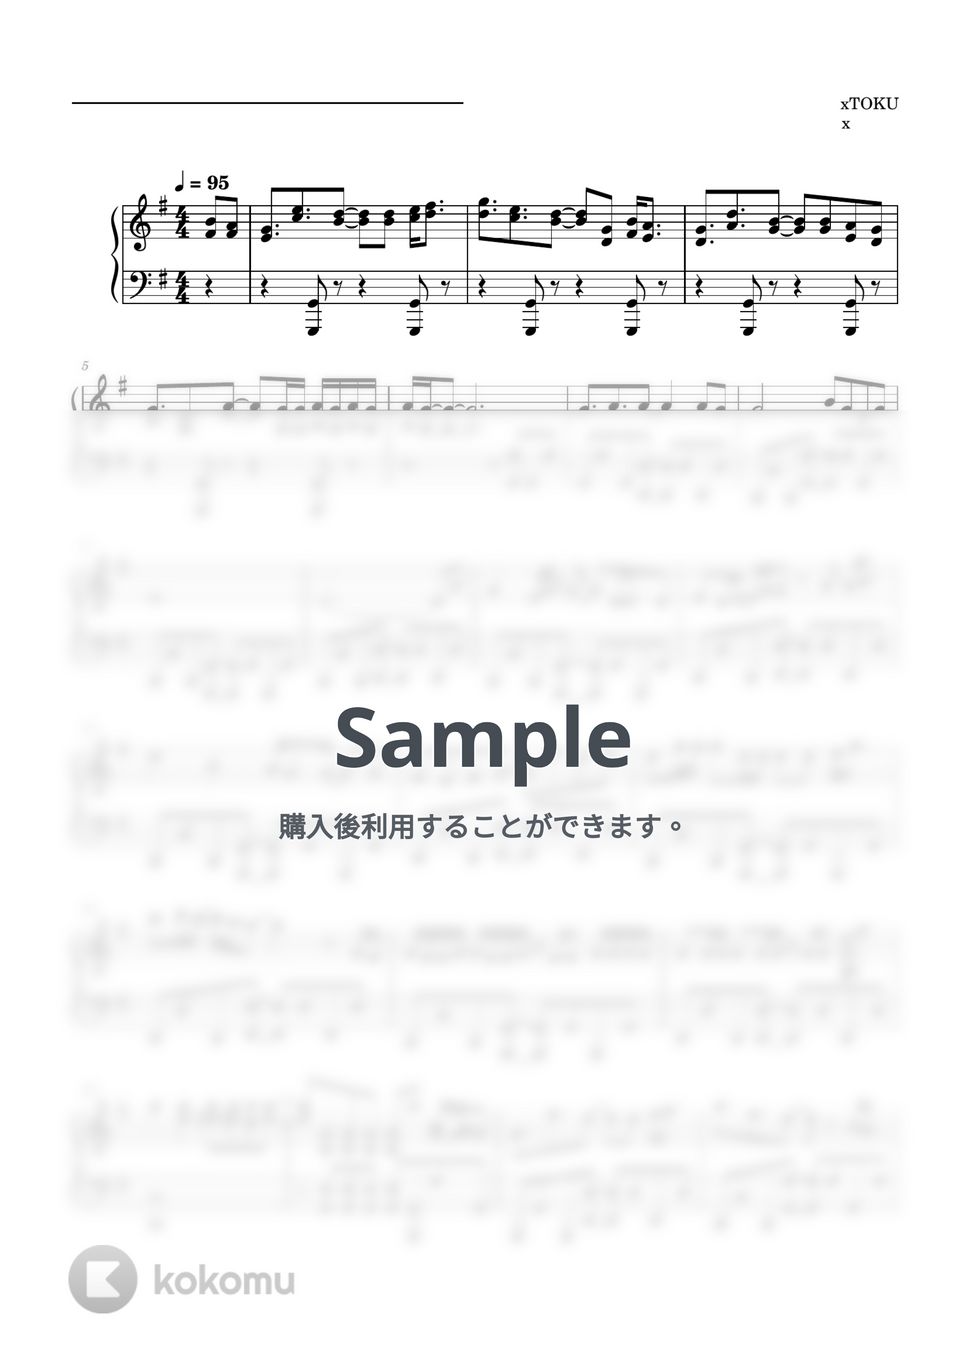 荒野行動 - 向こうへ (ピアノソロ譜) by 萌や氏